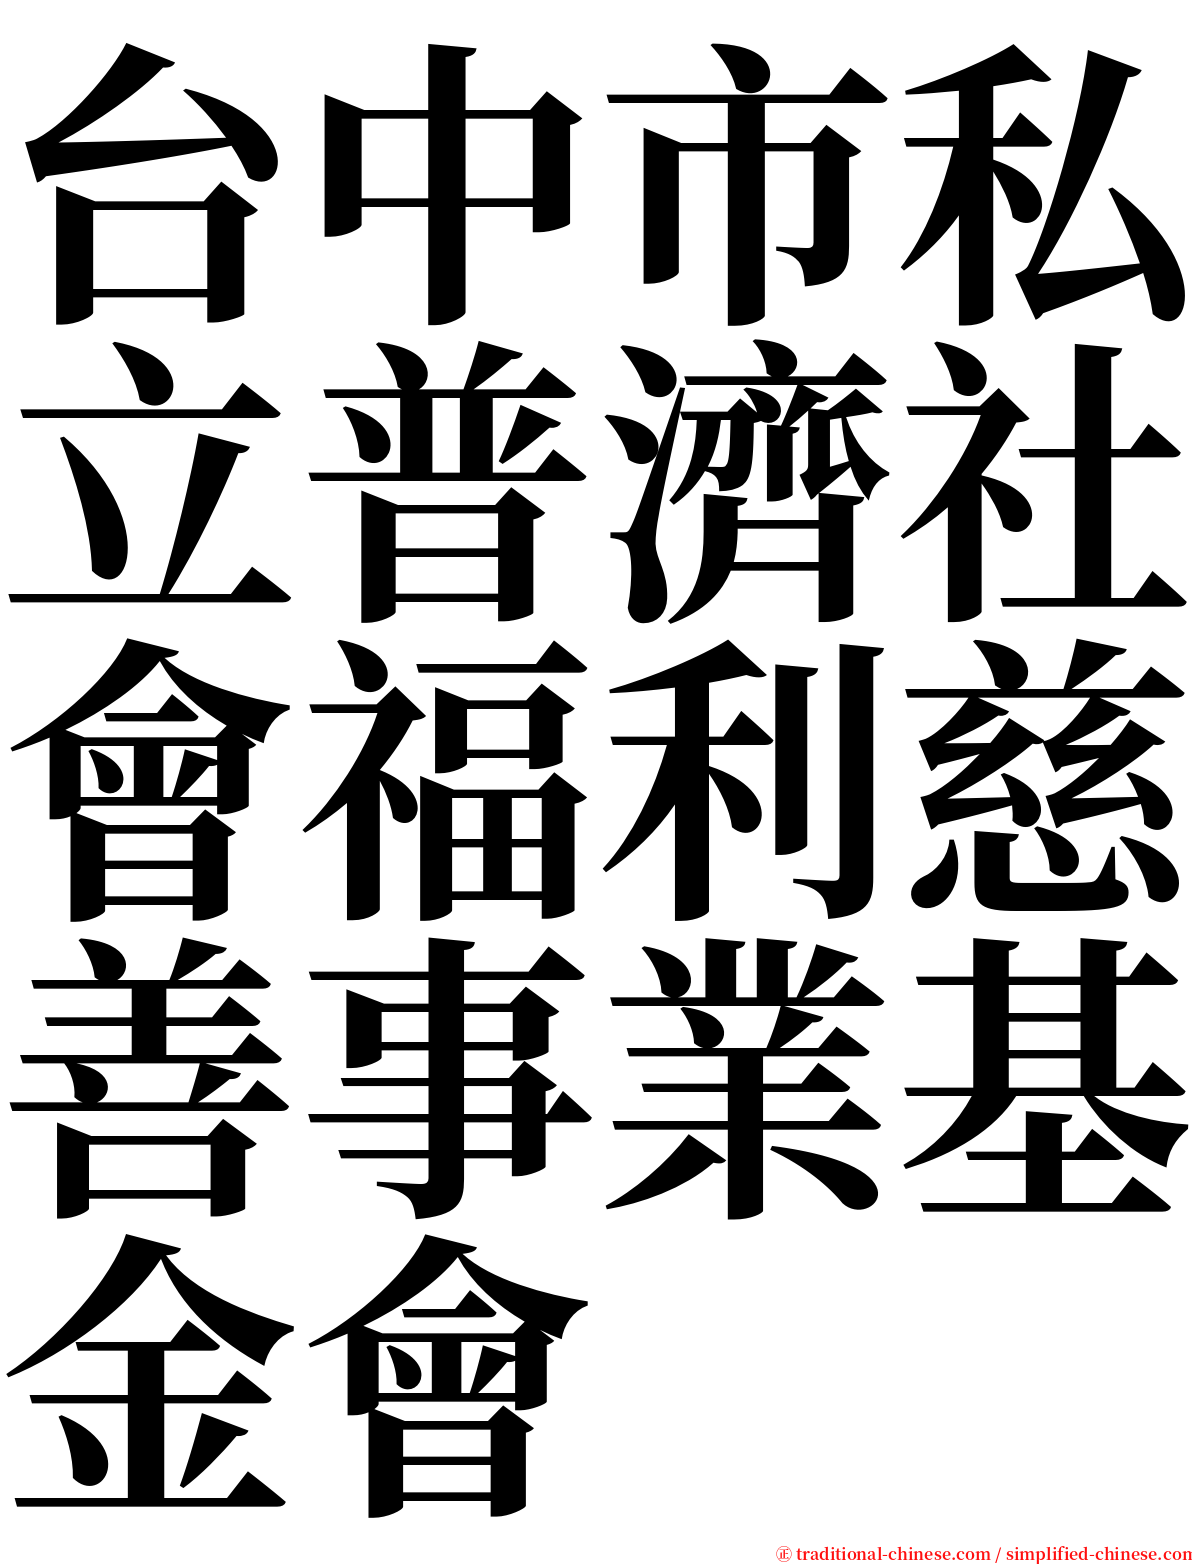 台中市私立普濟社會福利慈善事業基金會 serif font